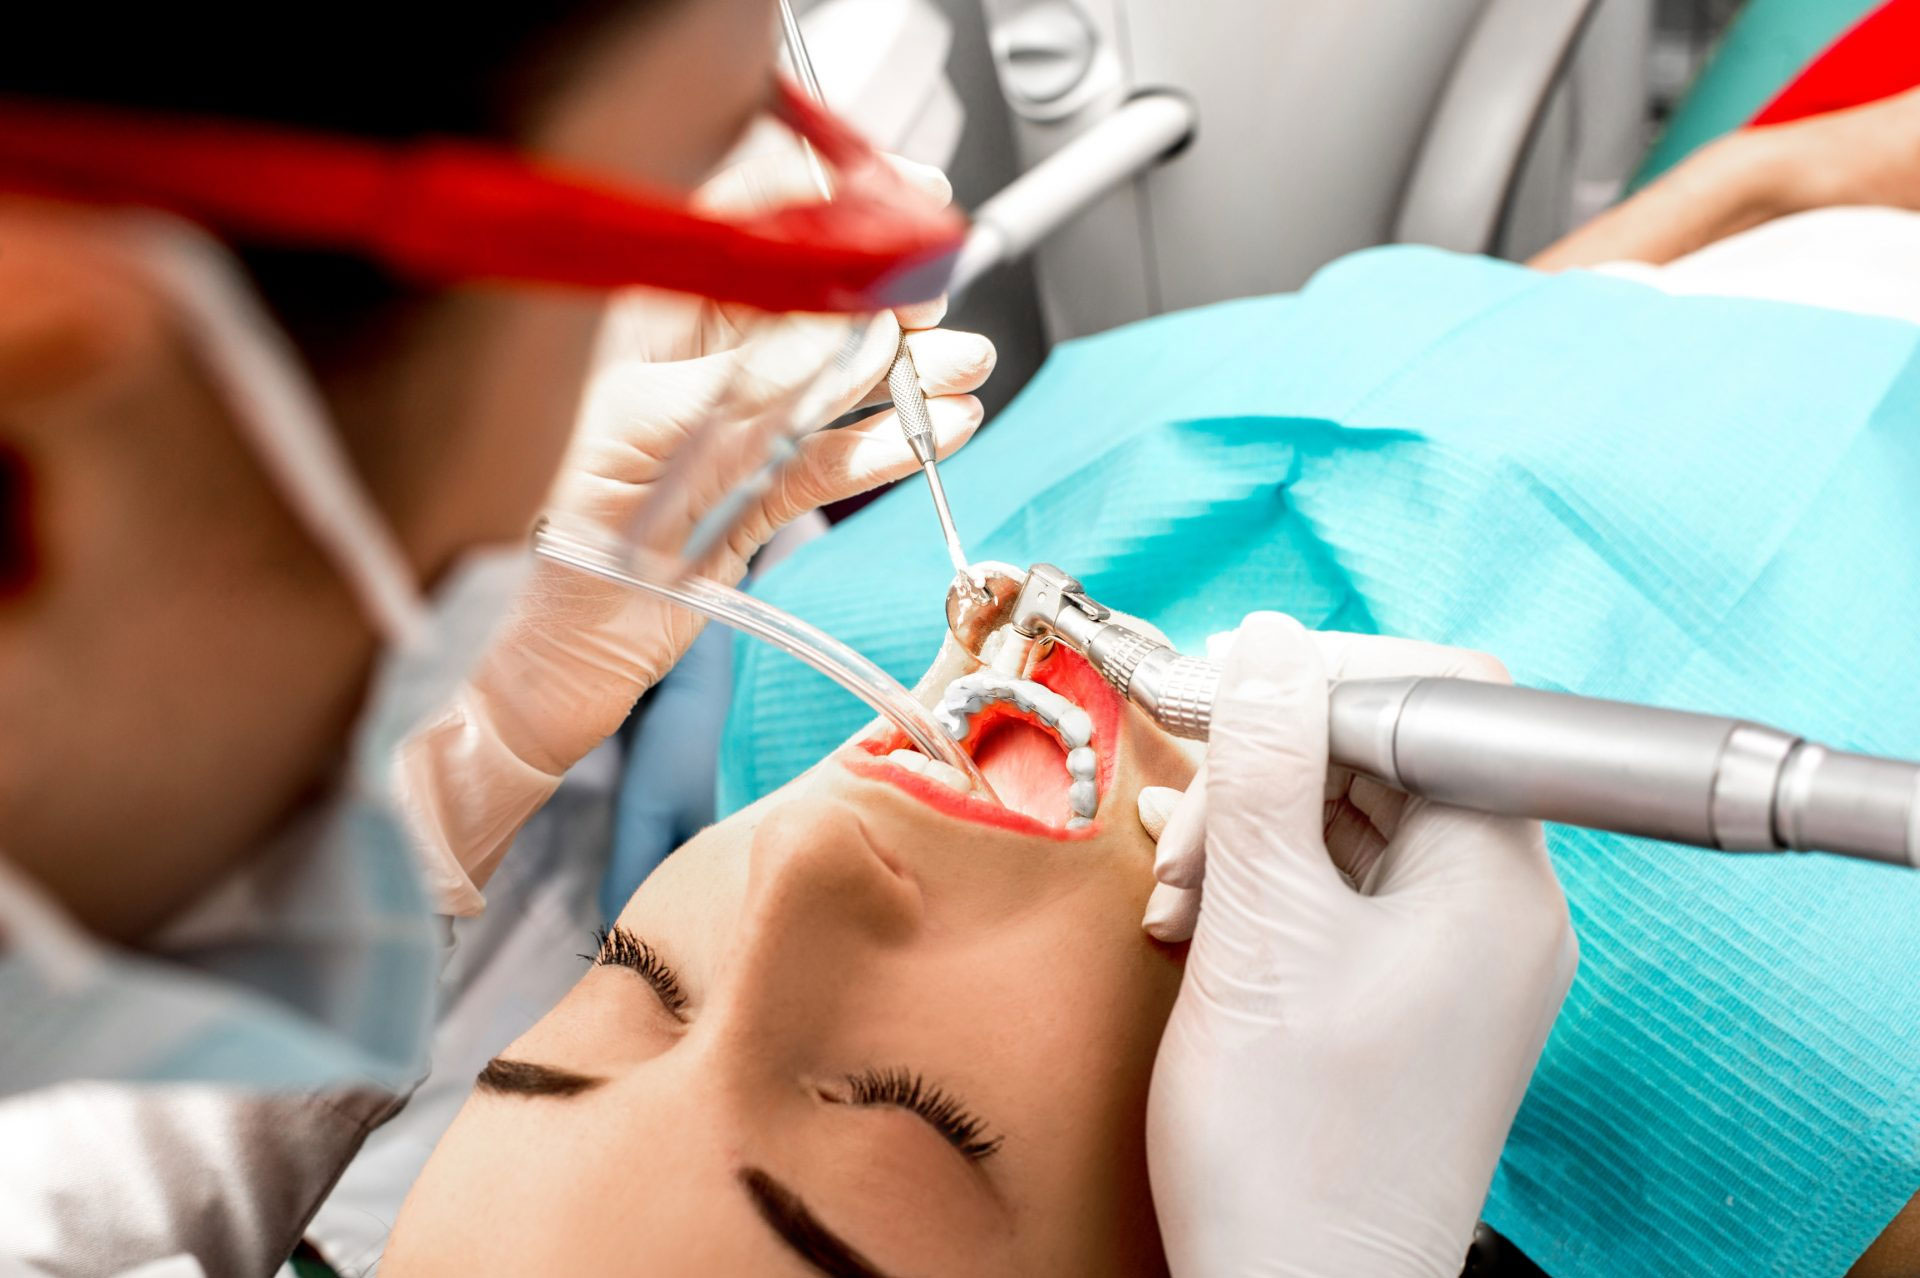 Oral & Maxillofacial surgery